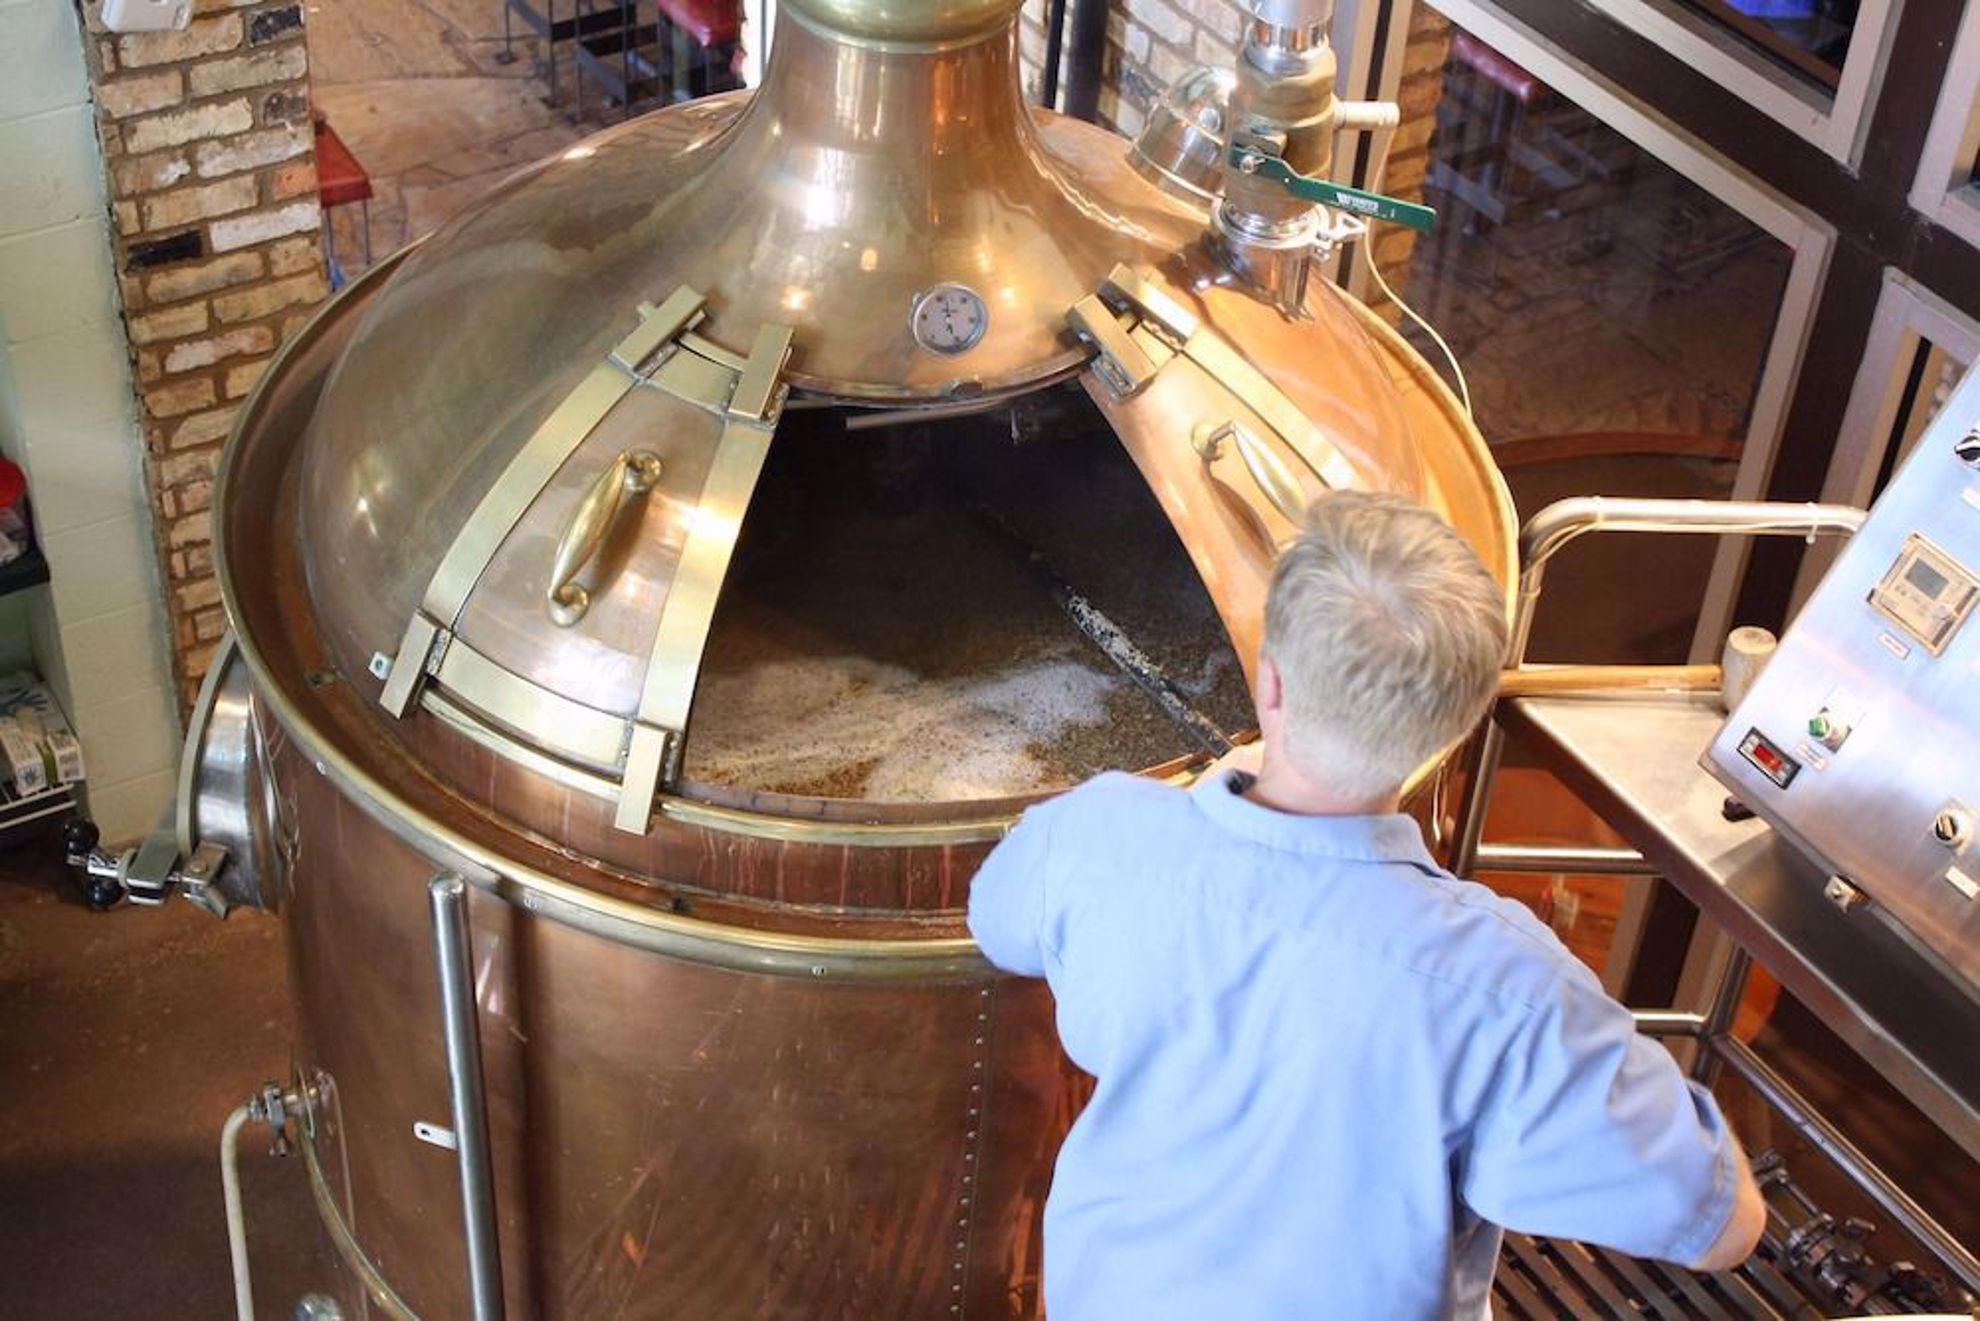 Beer being brewed